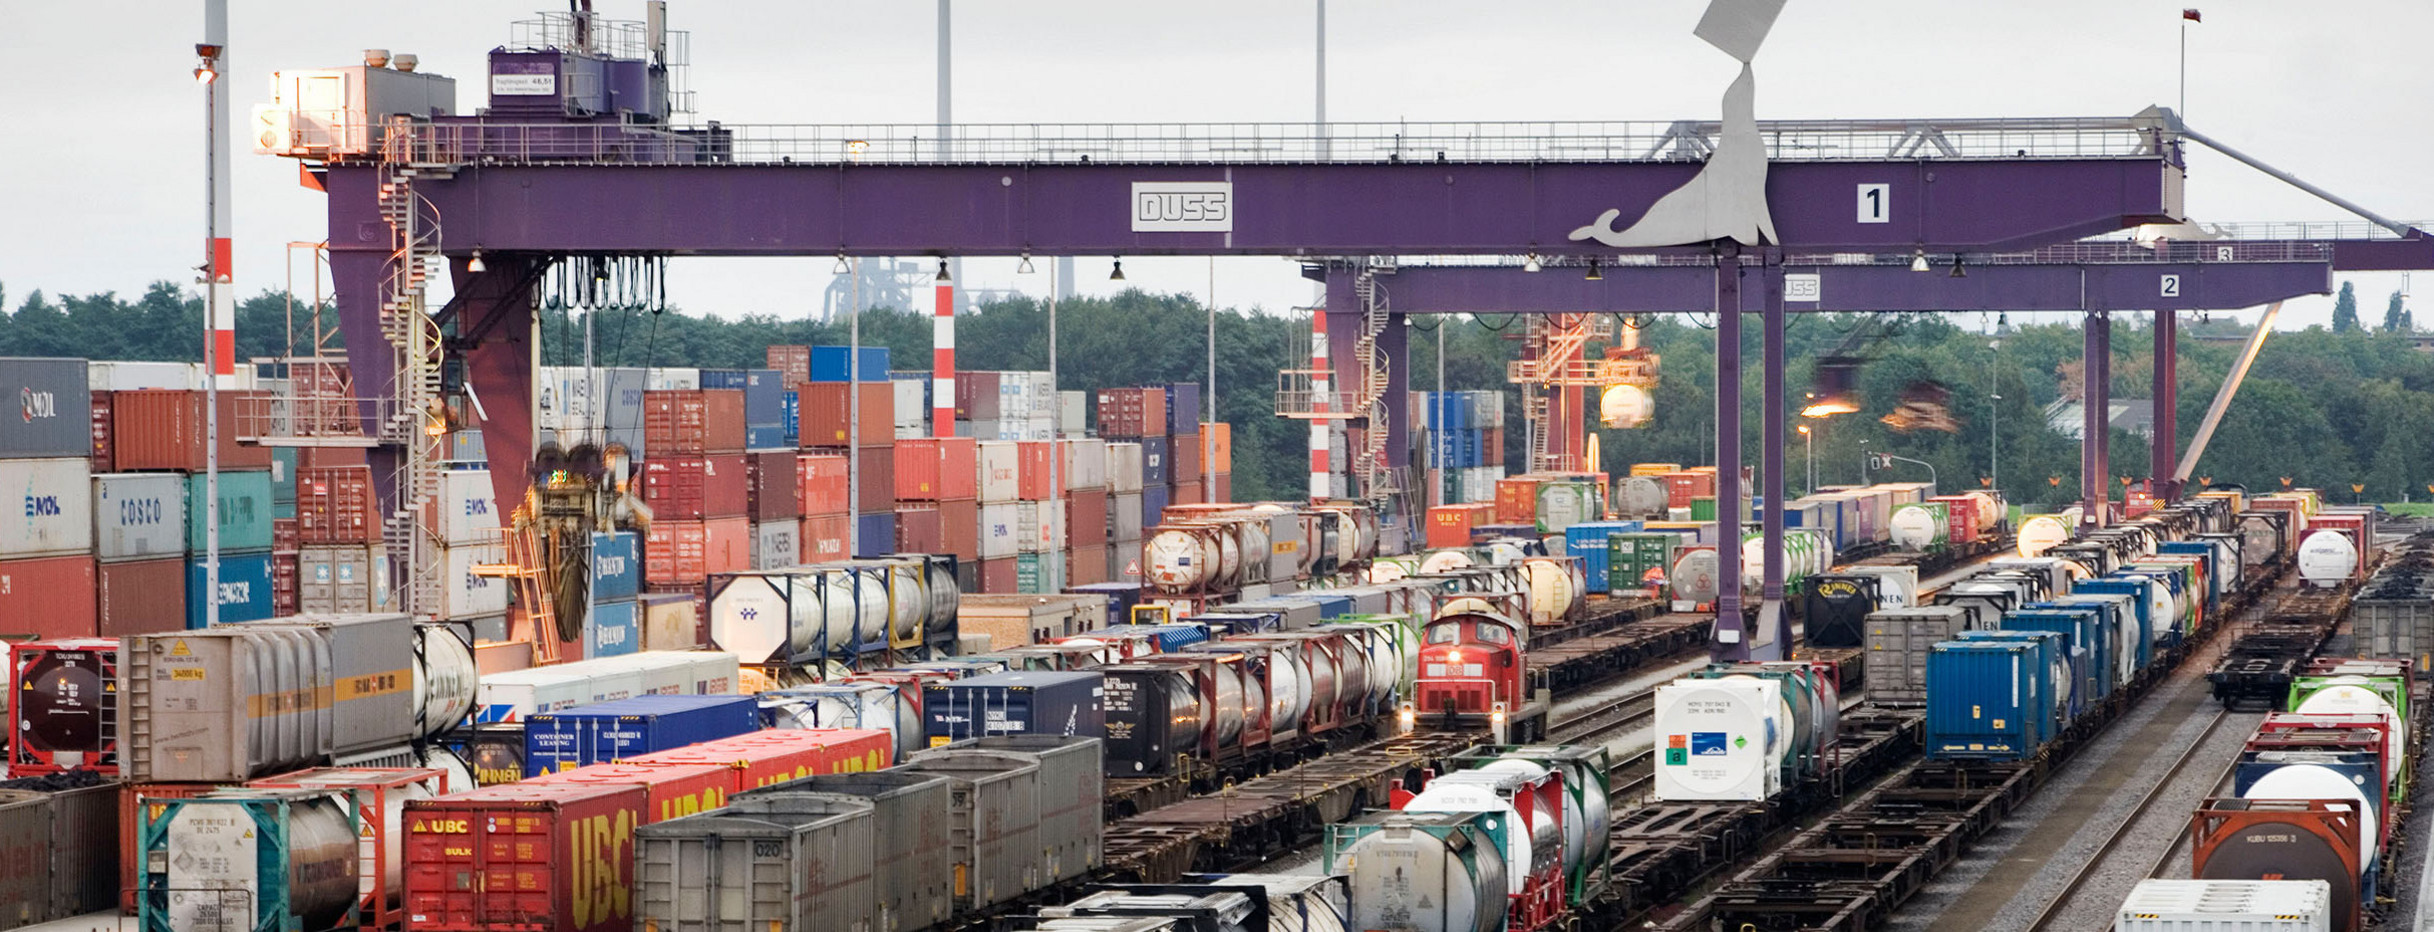 Container werden auf Zugwaagons verladen, die auf mehreren Gleisen stehen.